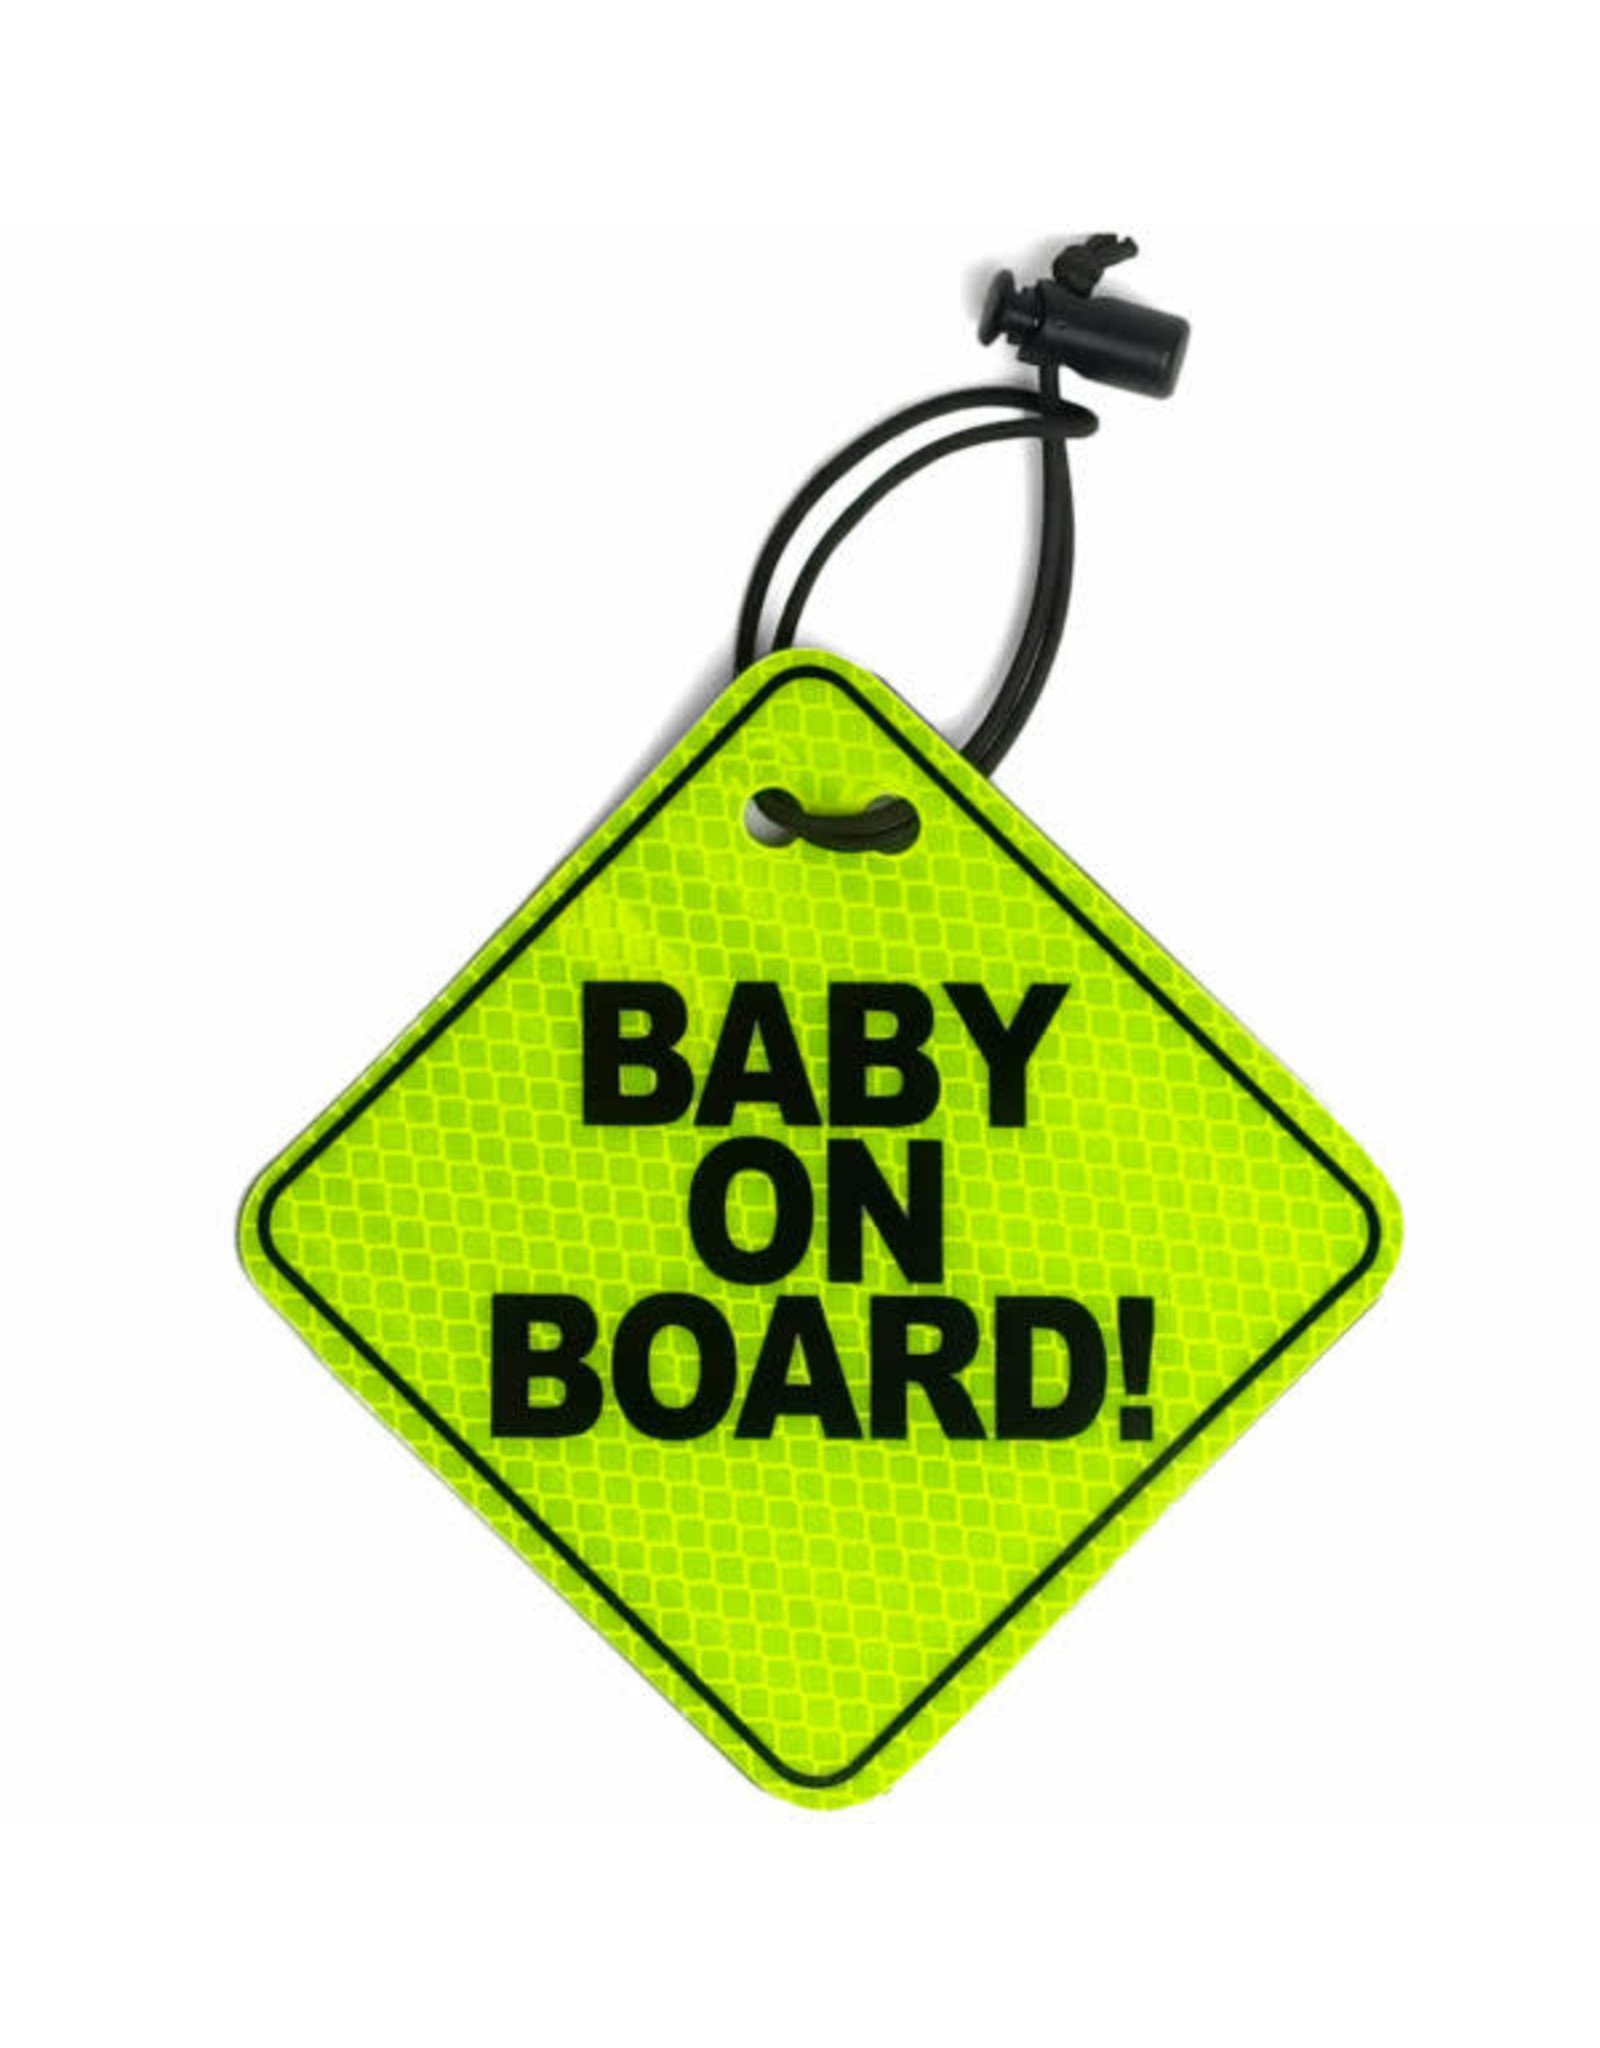 Take a Trip Take a Trip Baby on Board Reflector